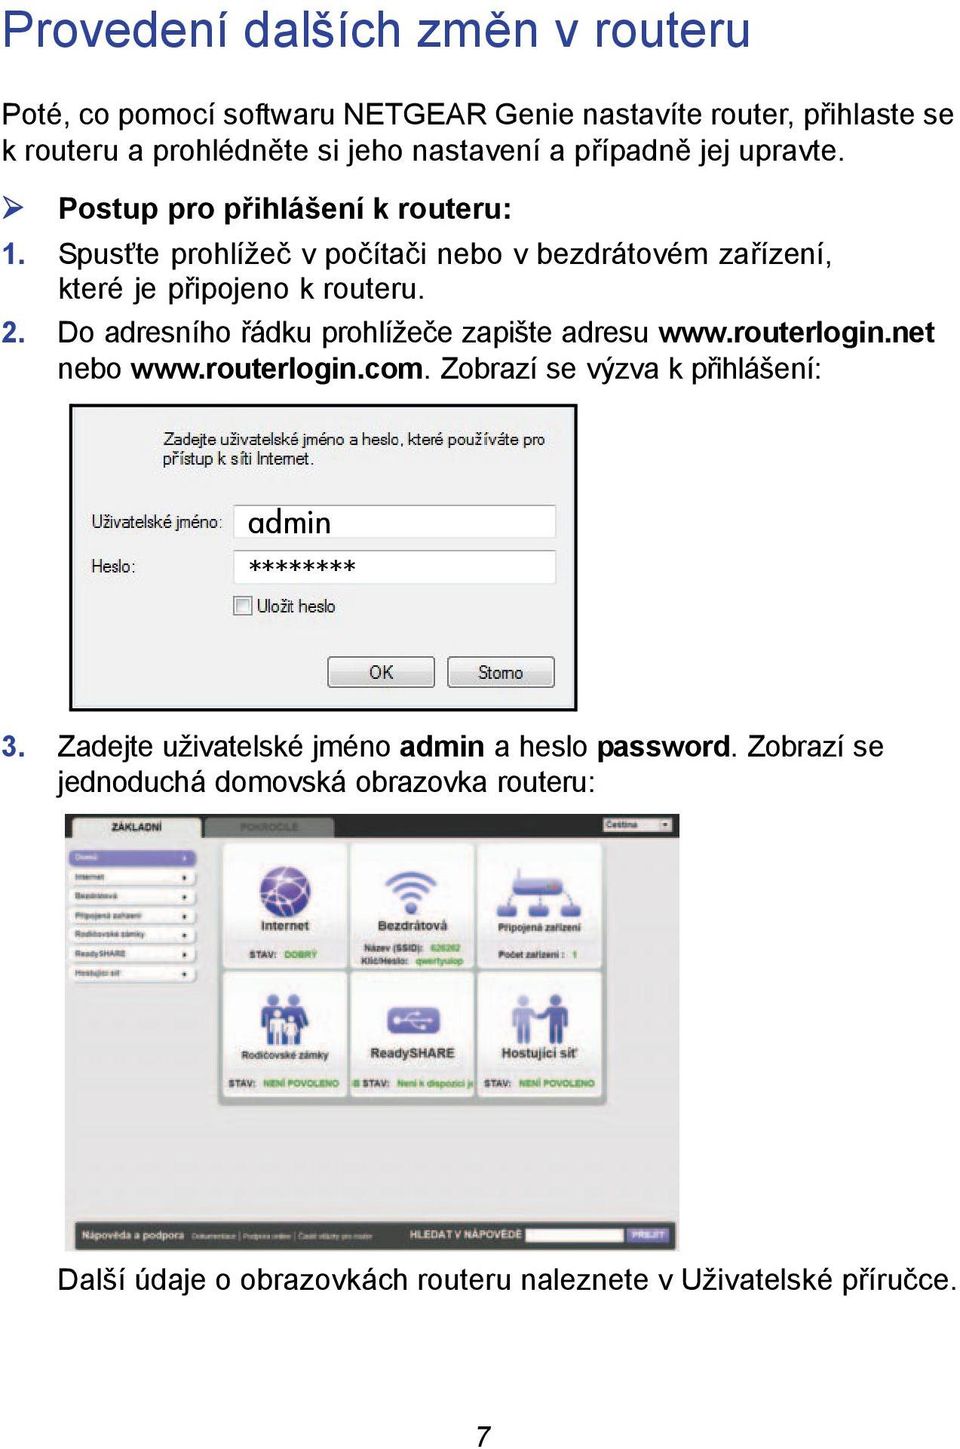 Do adresního řádku prohlížeče zapište adresu www.routerlogin.net nebo www.routerlogin.com. Zobrazí se výzva k přihlášení: admin ******** 3.